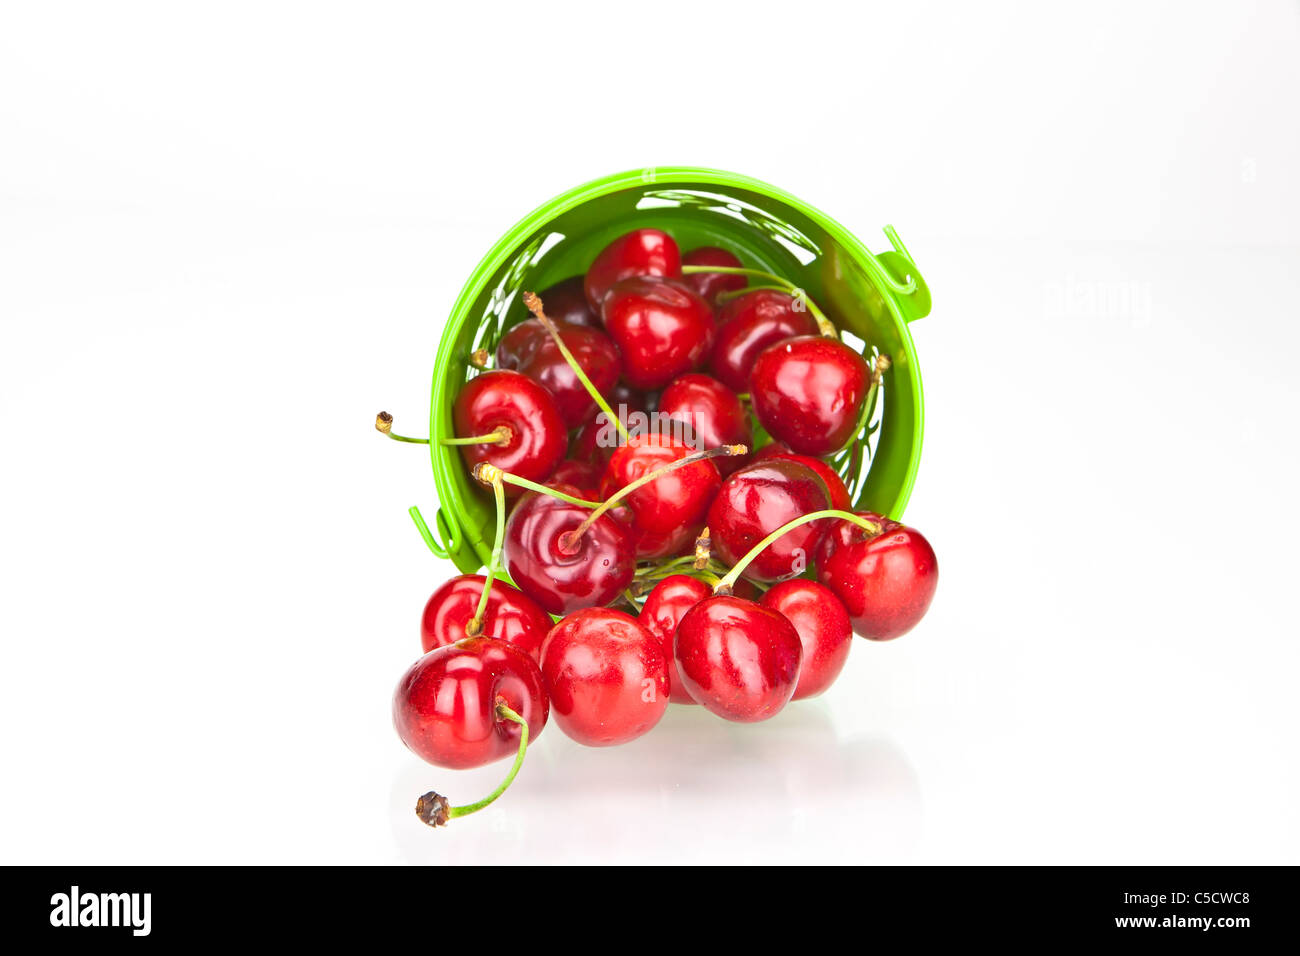 Cerises rouges frais dans un bol vert sur fond blanc Banque D'Images